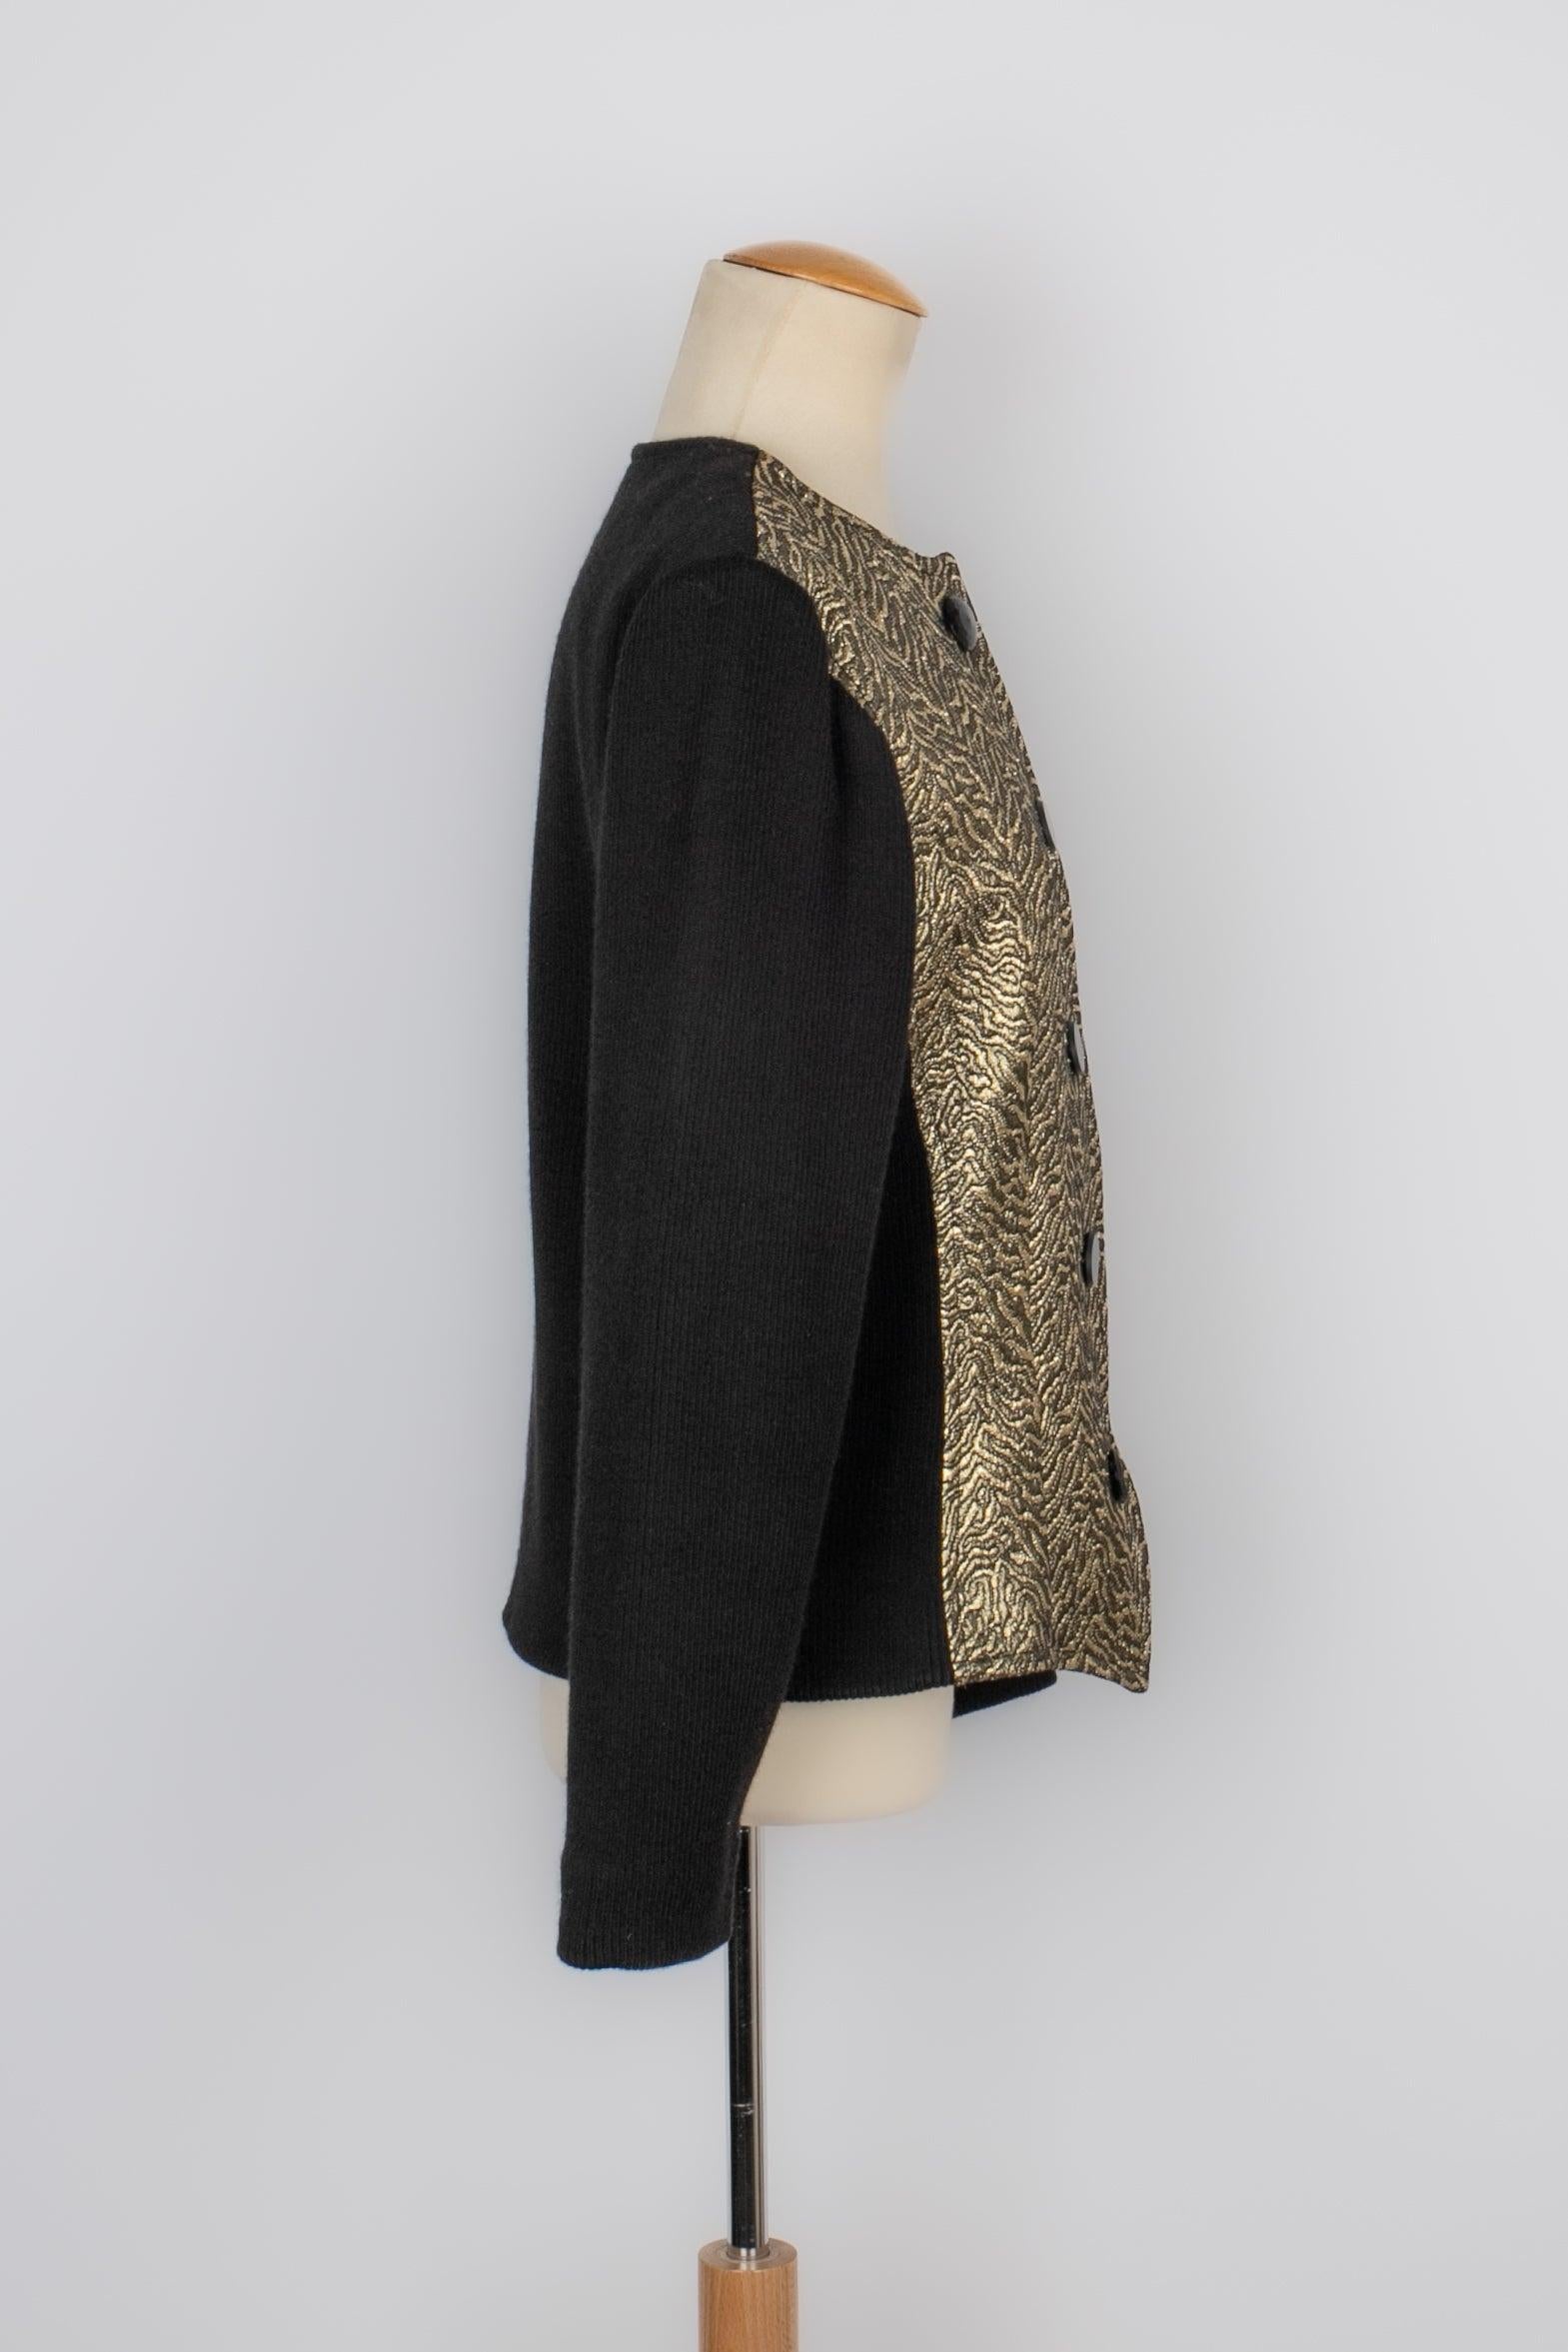 Yves Saint Laurent - (Made in France) Schwarze Jacke aus Wolle und goldenem Lurex aus den 1980er Jahren. Größe und Zusammensetzung Label fehlt, ist es für eine 38FR geeignet. Kollektion Herbst/Winter 1986.

Zusätzliche Informationen:
Zustand: Sehr